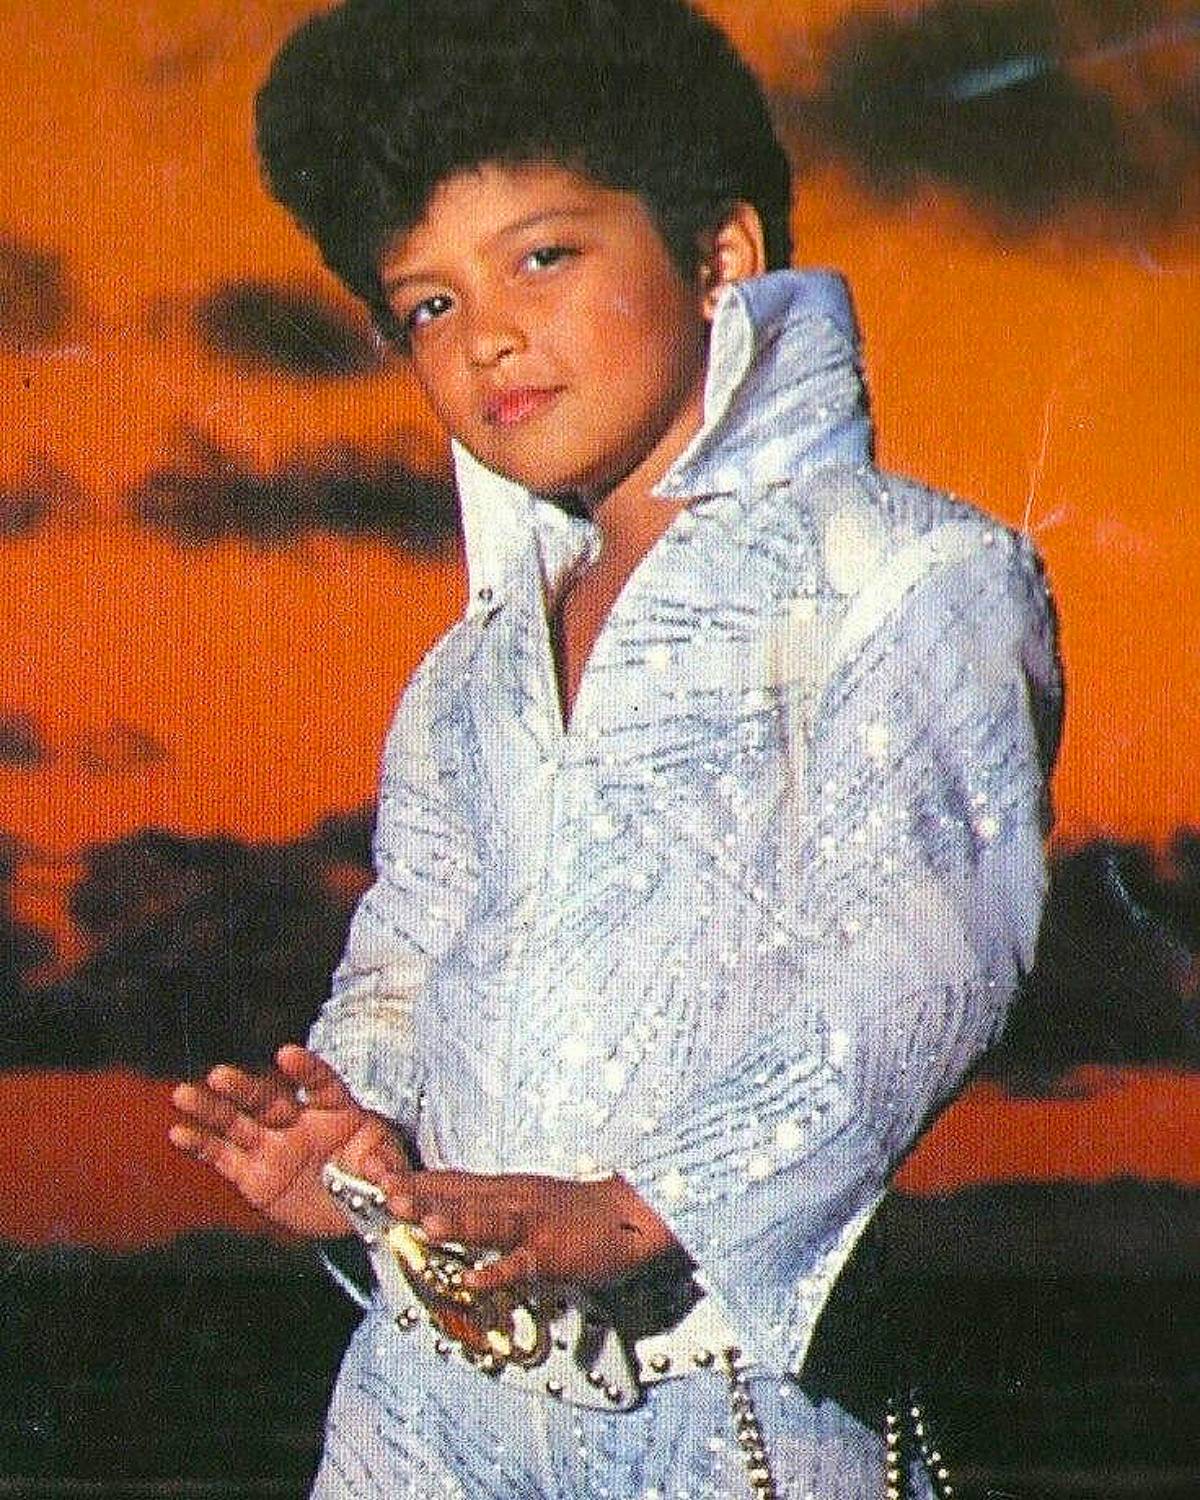 Little Bruno Mars as Elvis Presley